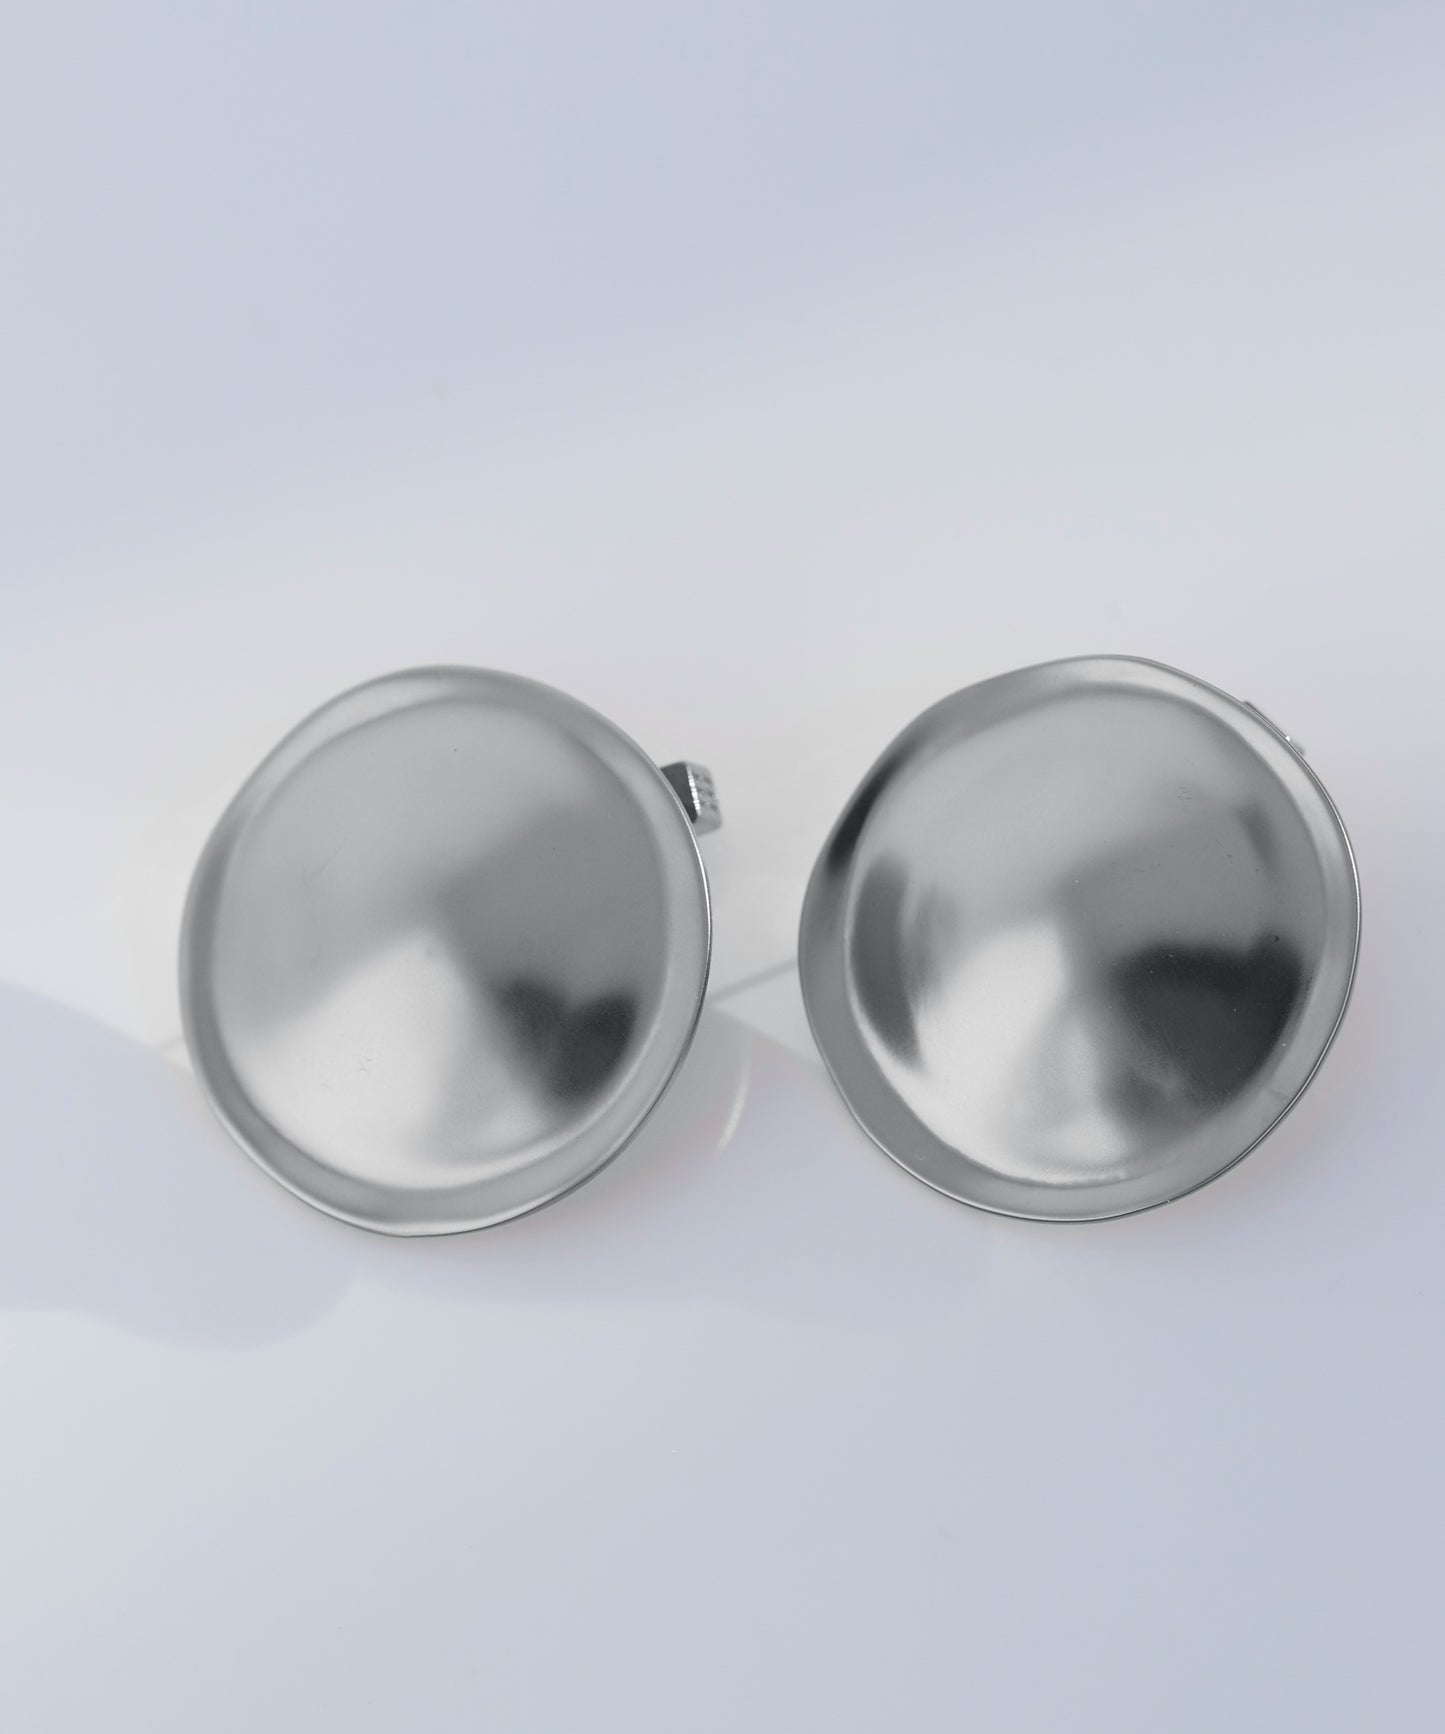 【Stainless Steel IP】 Big Plate Earrings [A]